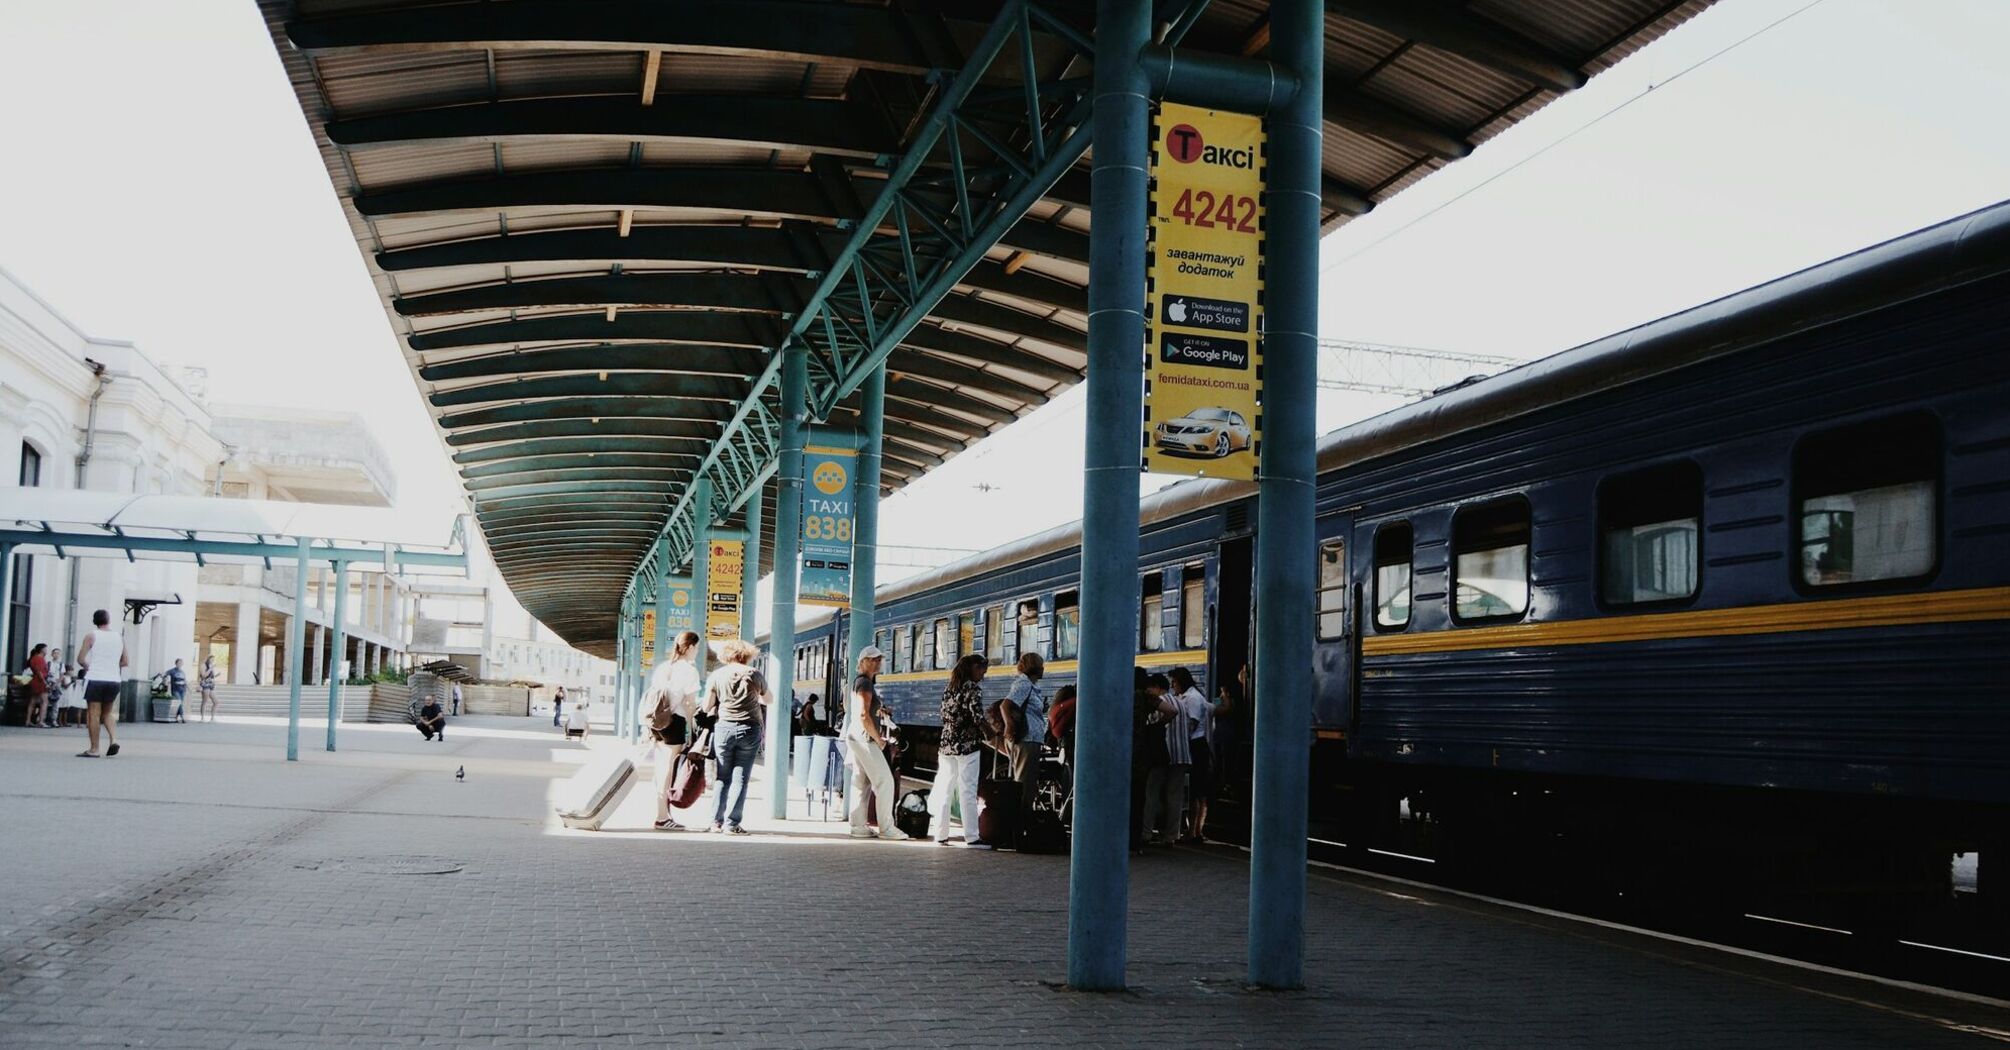 Ukrzaliznytsia reminded passengers of an important rule for international trips